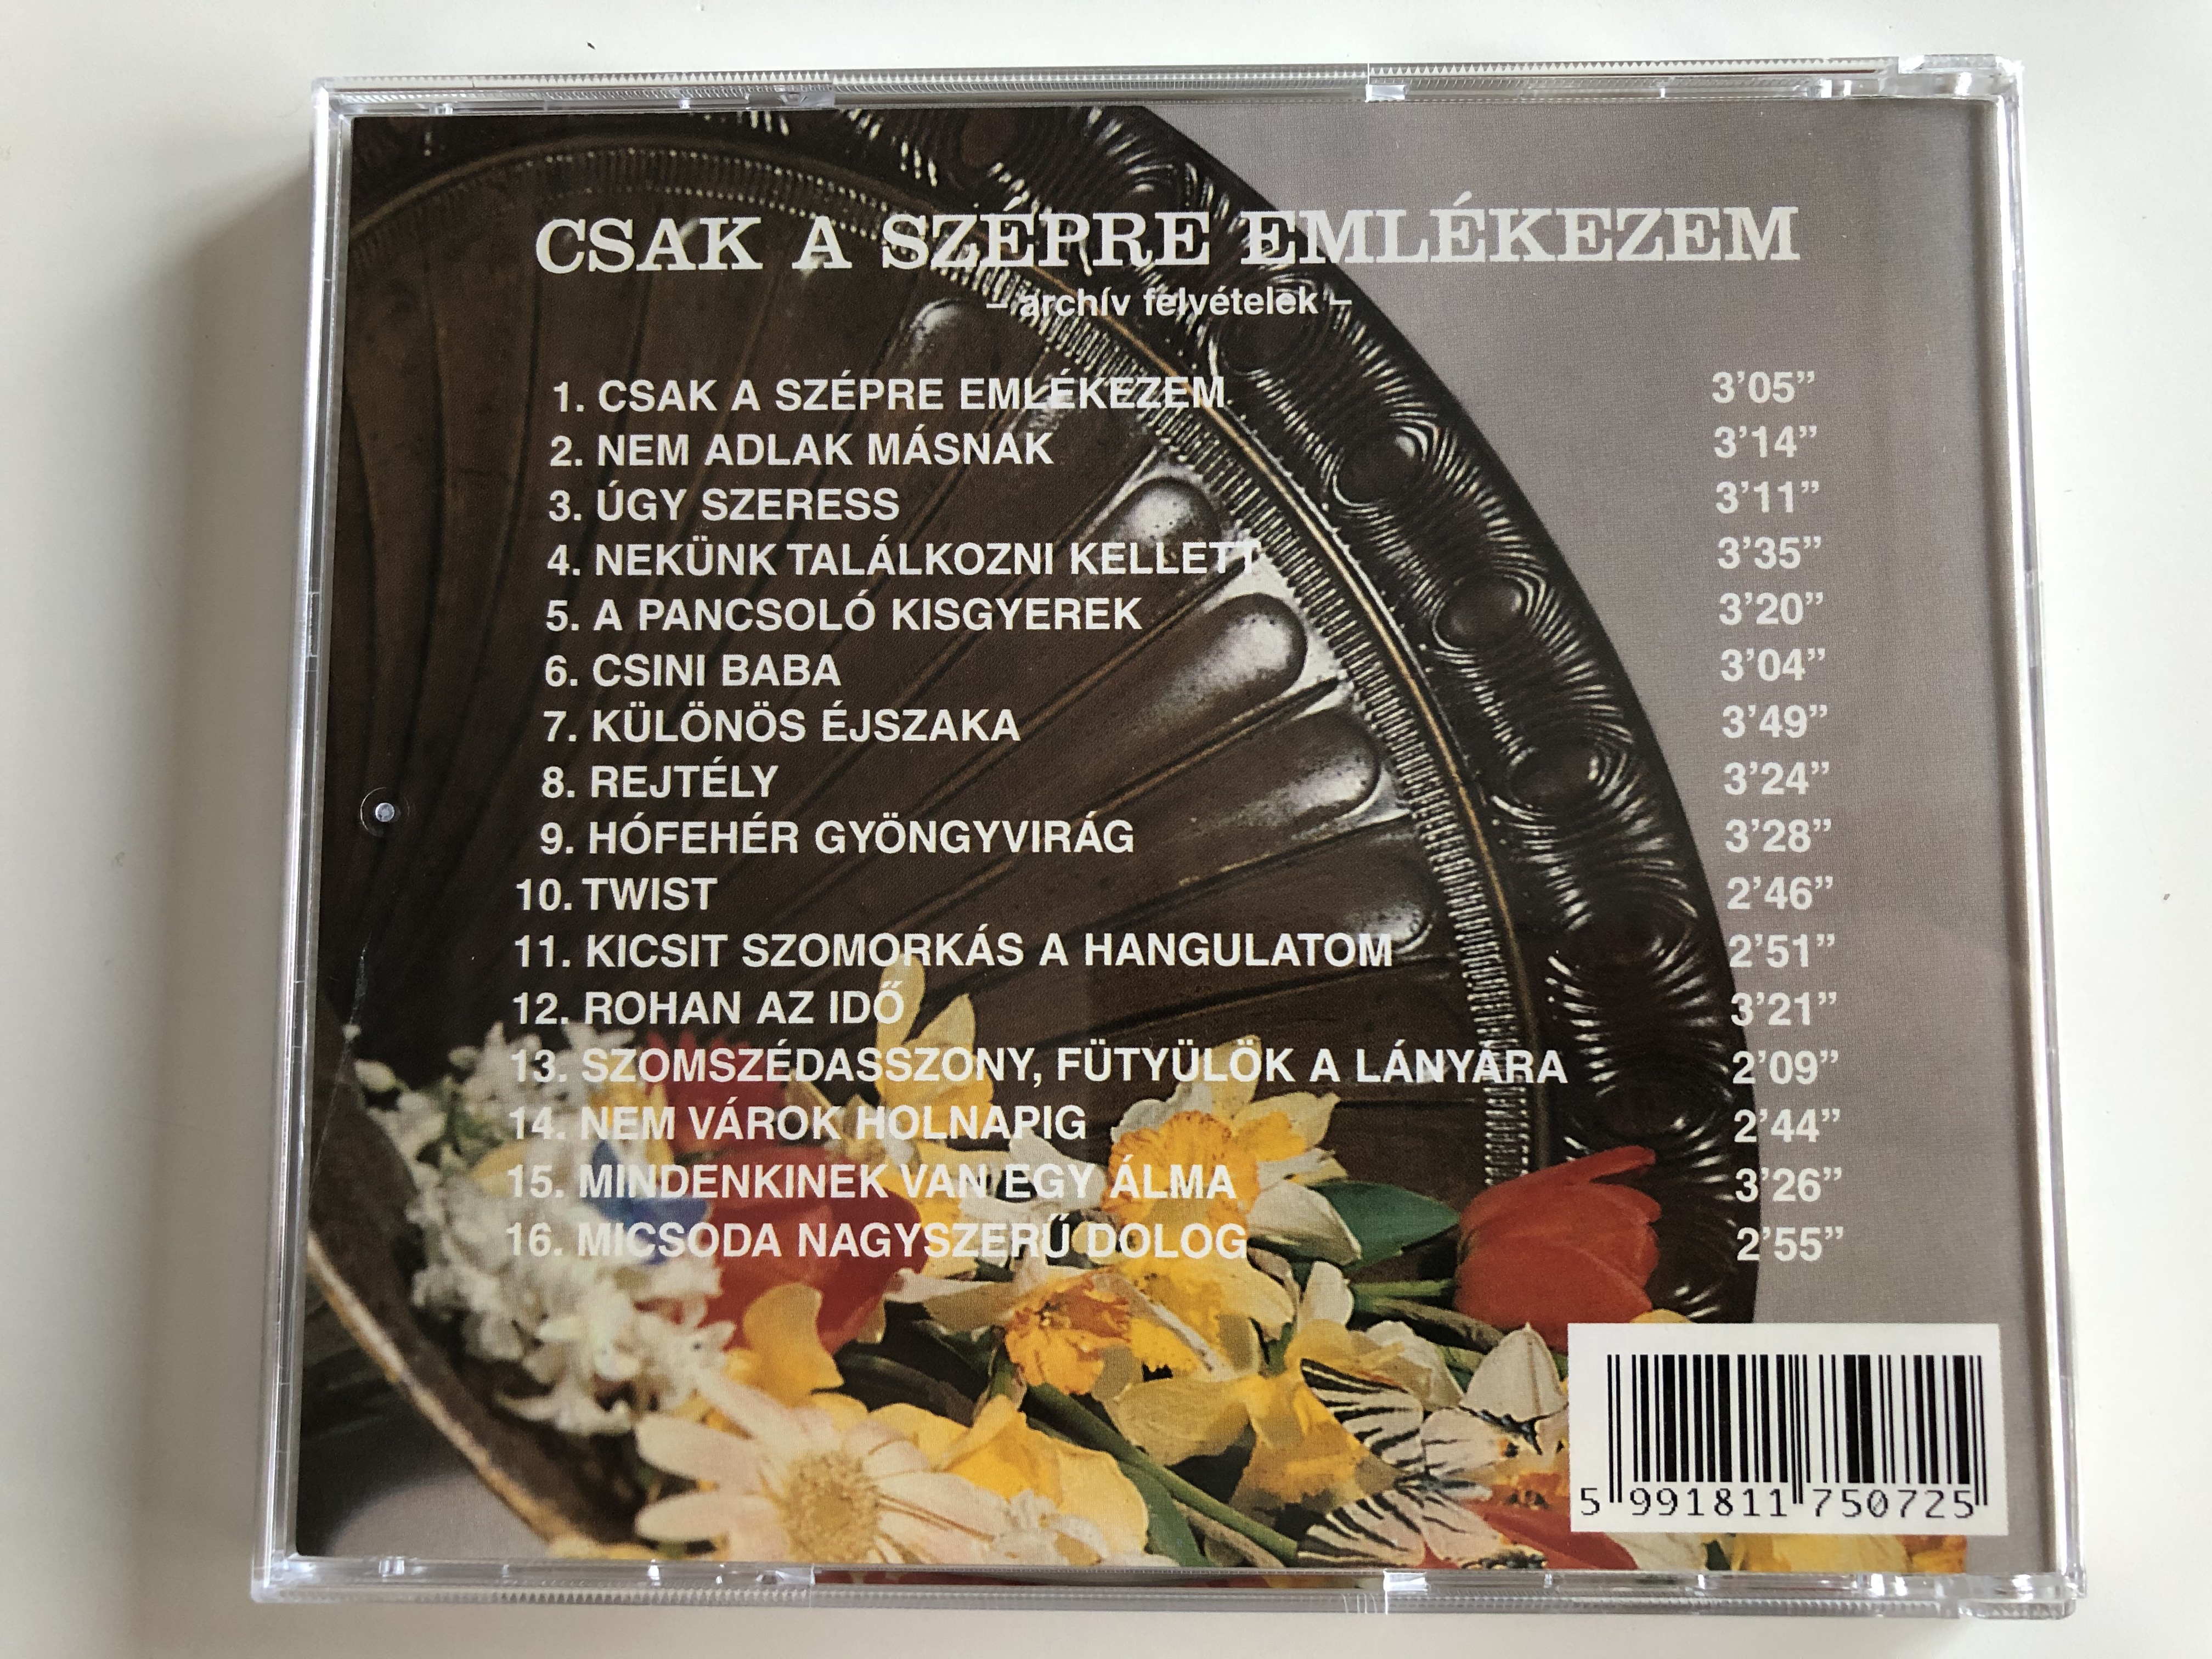 csak-a-sz-pre-eml-kezem-gong-audio-cd-1997-hcd-17507-5-.jpg